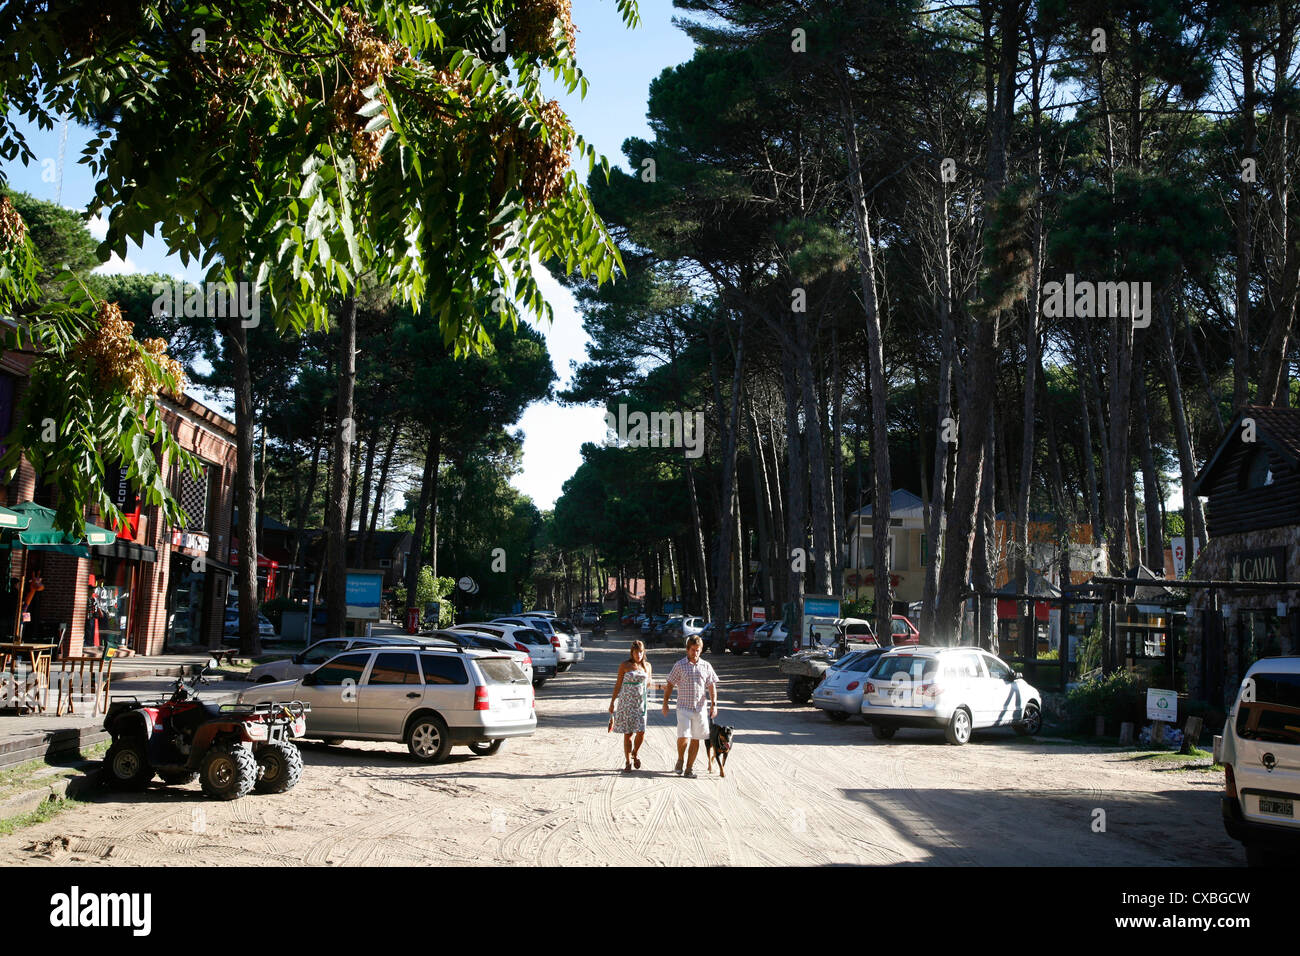 Street scene in Carilo, Argentina. Stock Photo